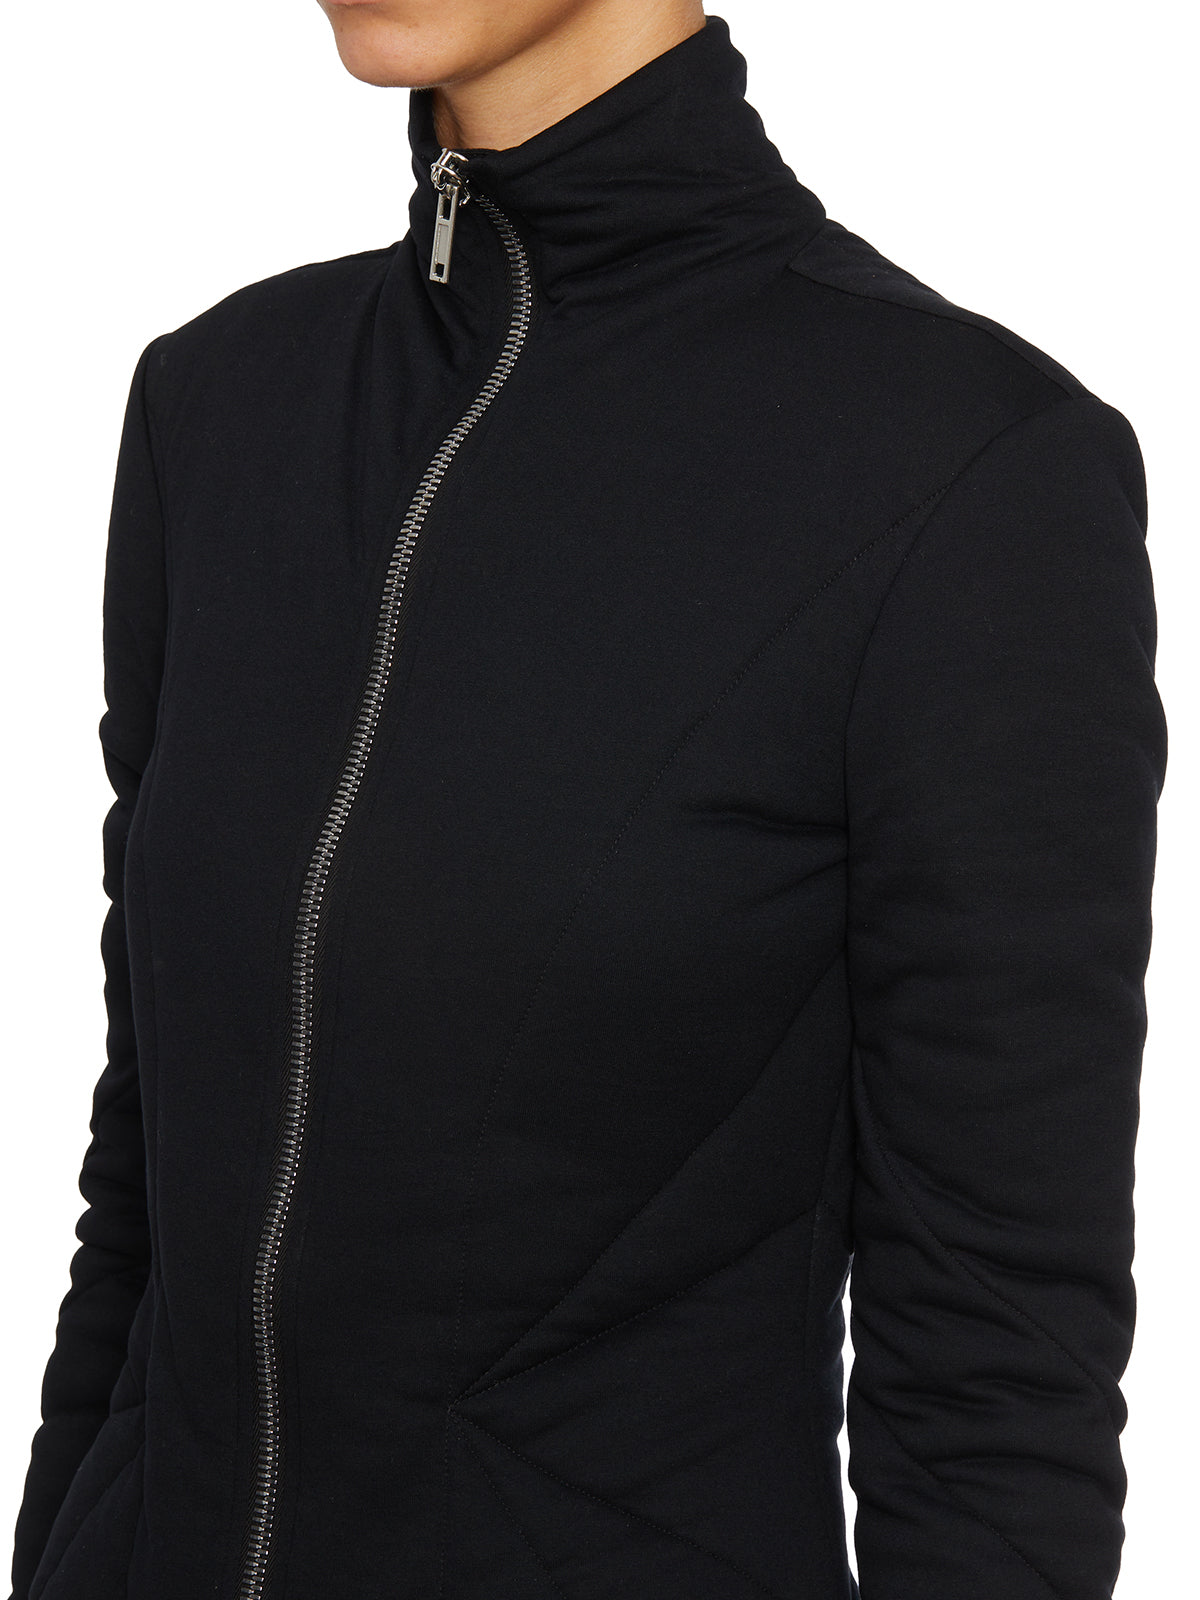 Áo khoác nữ lông giả bên trong vải đen - Bộ sưu tập FW23